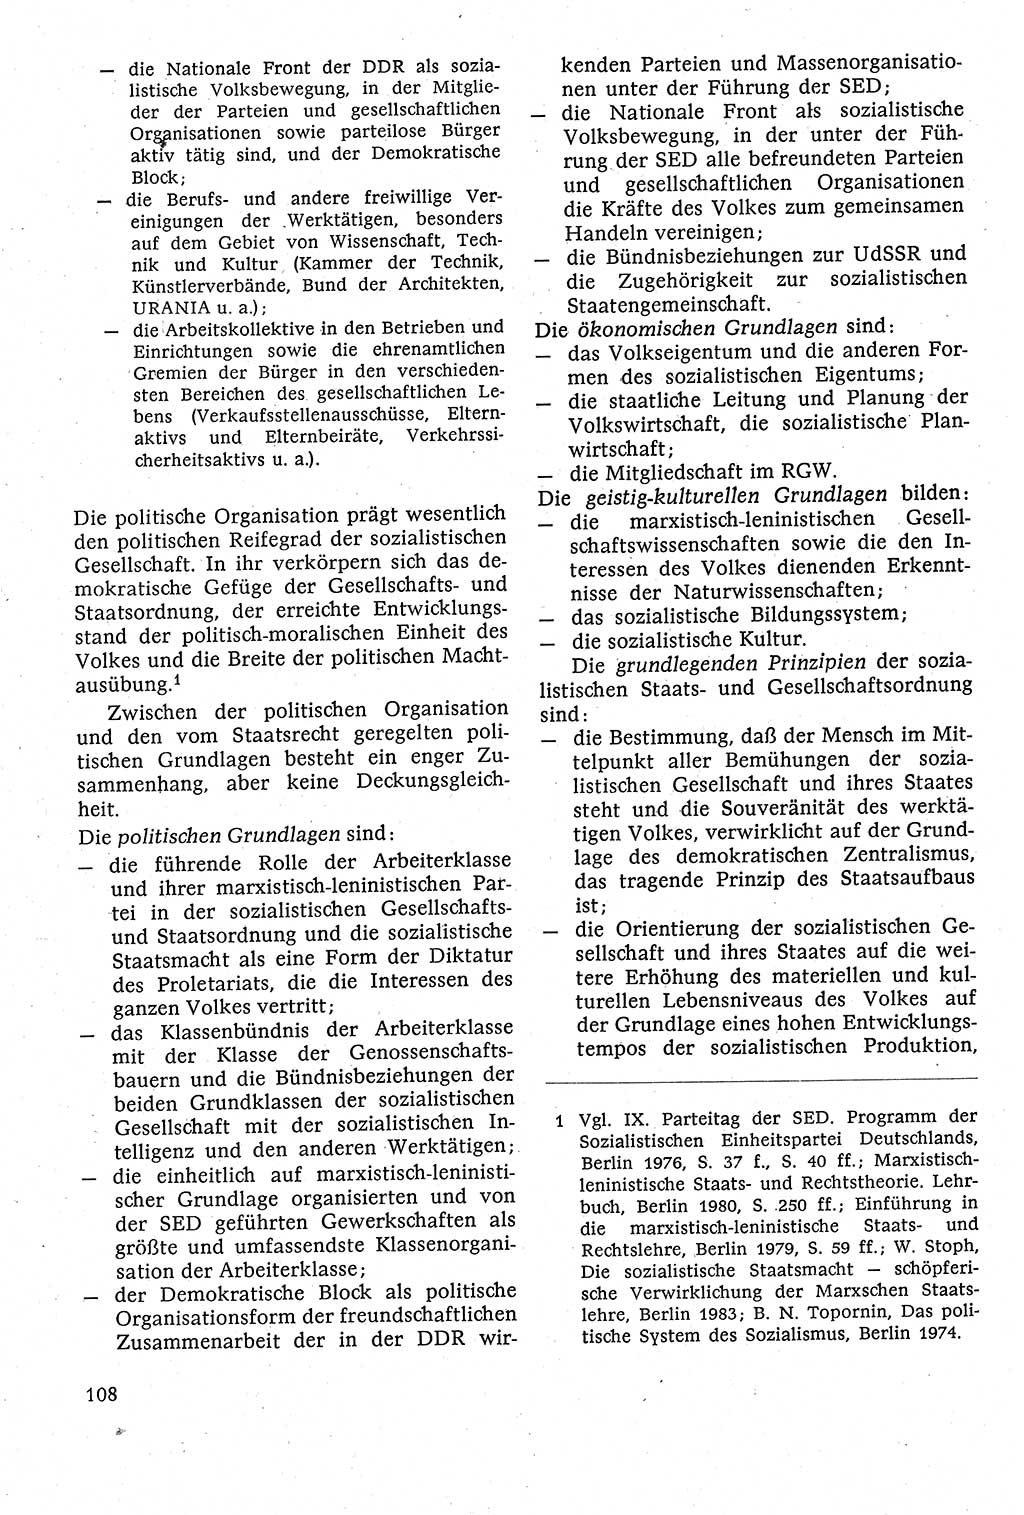 Staatsrecht der DDR [Deutsche Demokratische Republik (DDR)], Lehrbuch 1984, Seite 108 (St.-R. DDR Lb. 1984, S. 108)